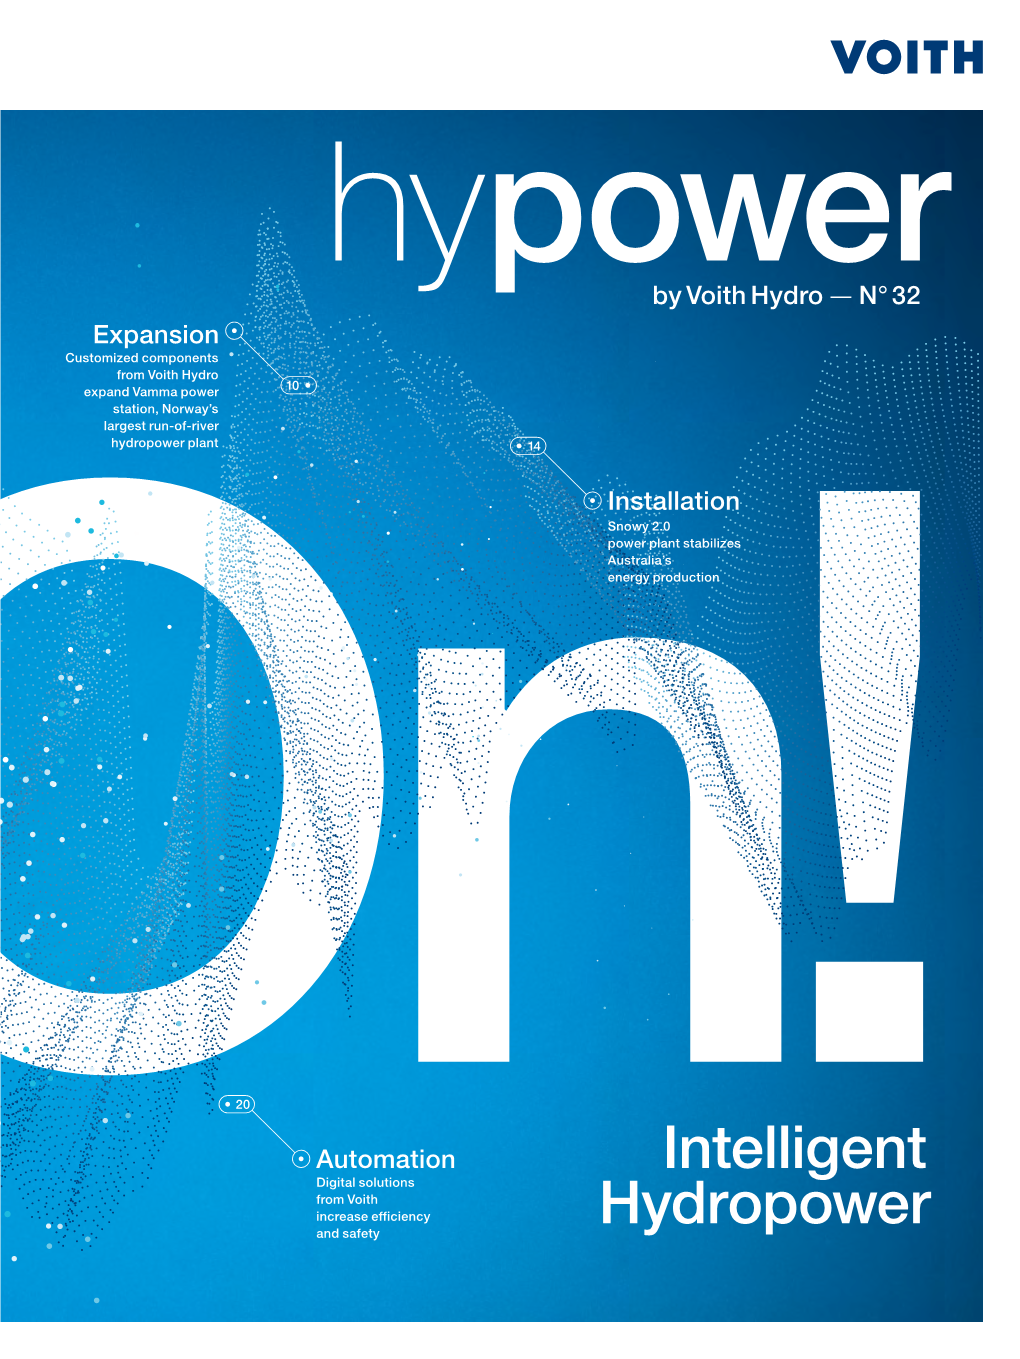 Intelligent Hydropower